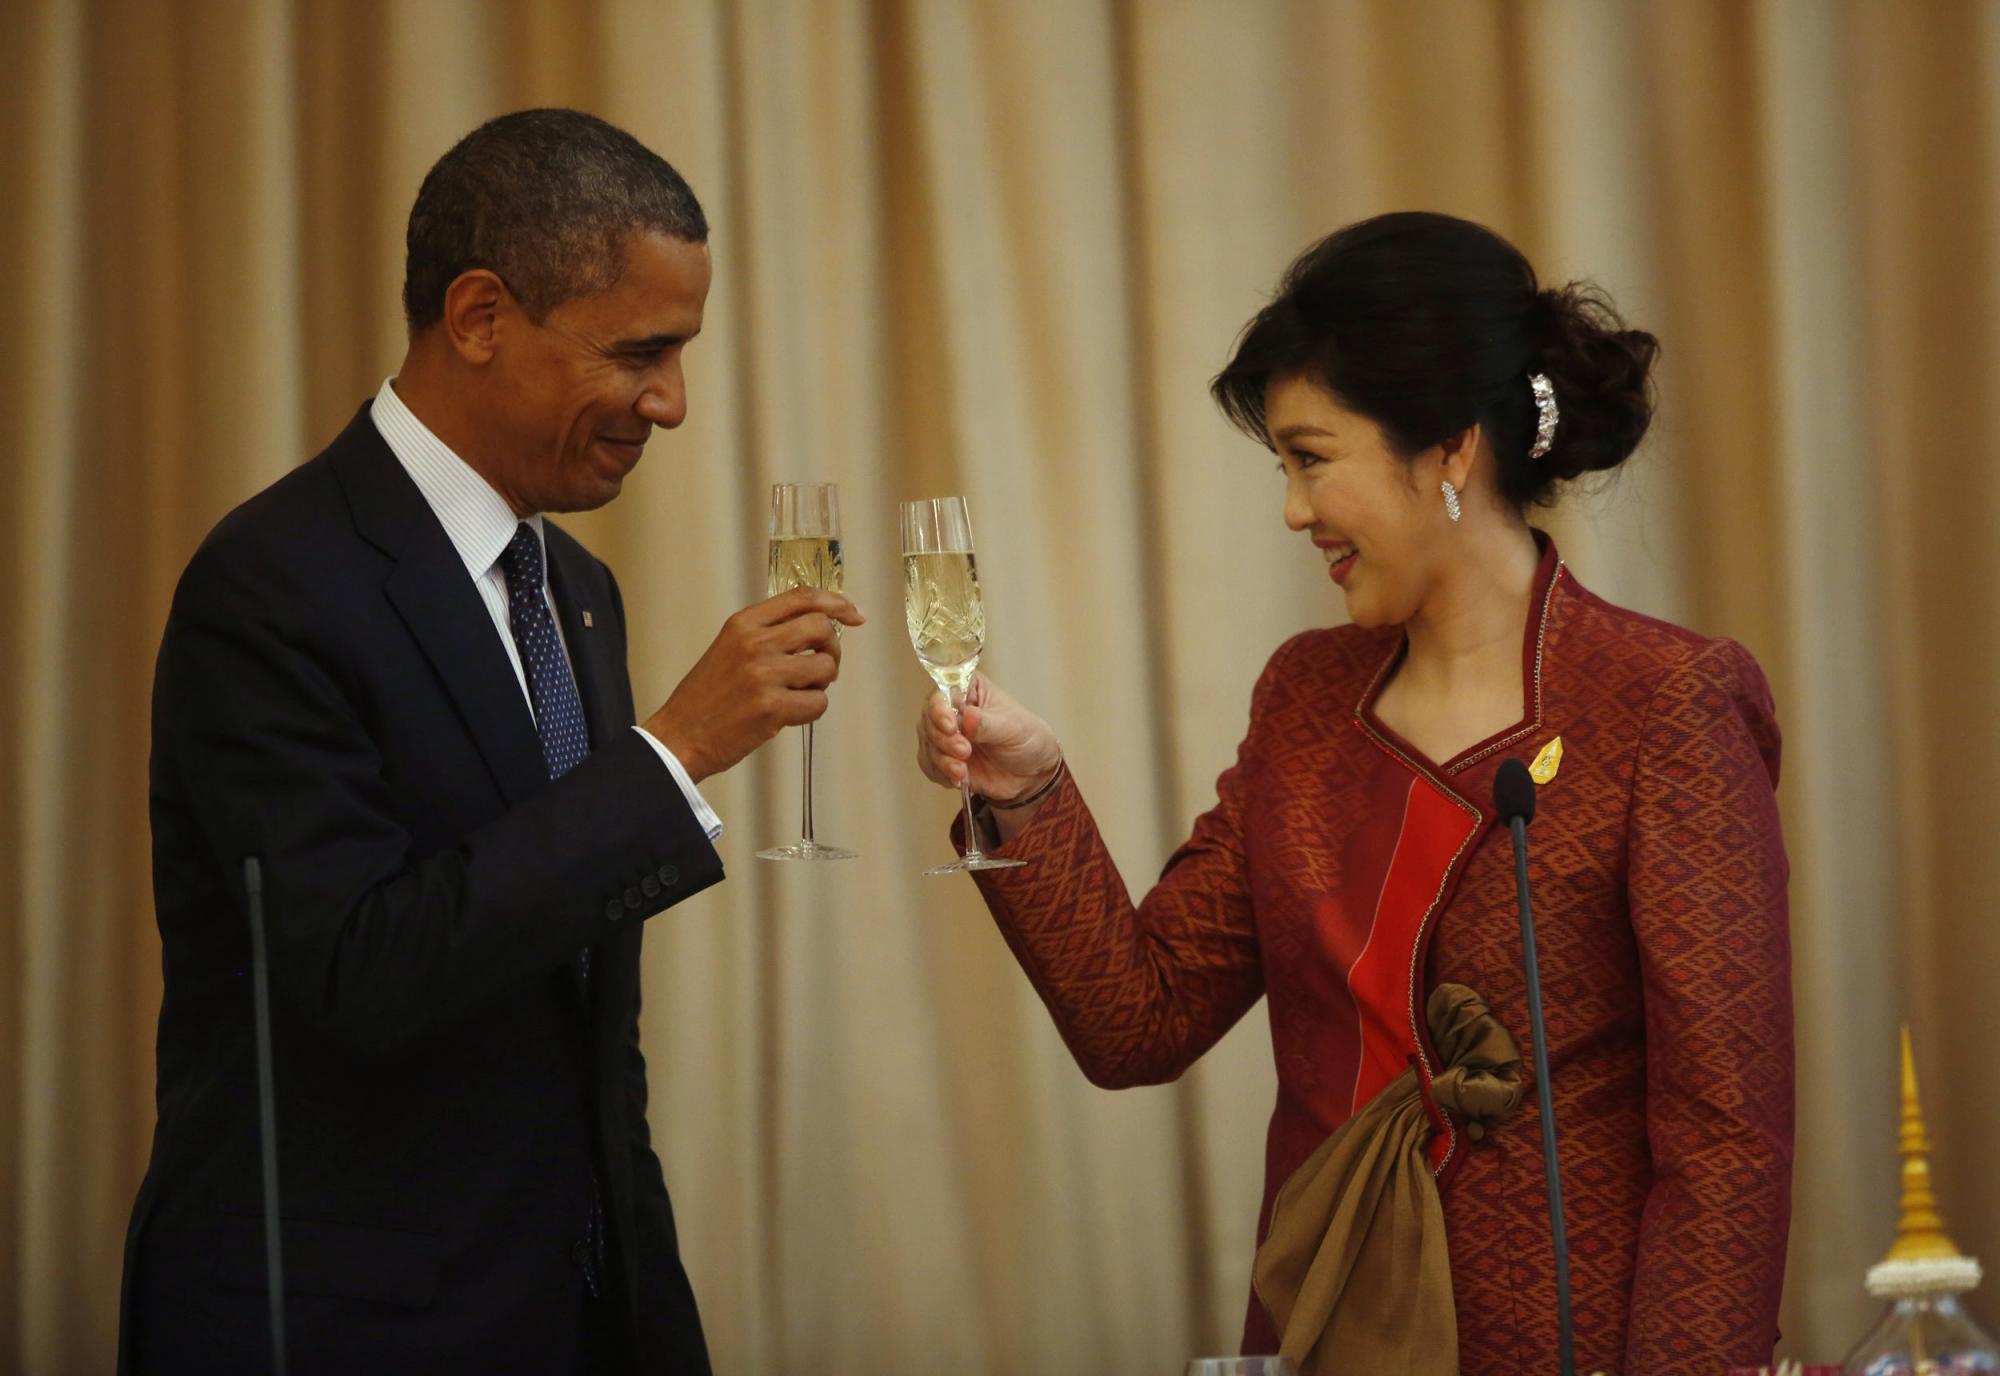 奥巴马旋风式访问东南亚三国 白宫称亚洲将成未来外交轴心